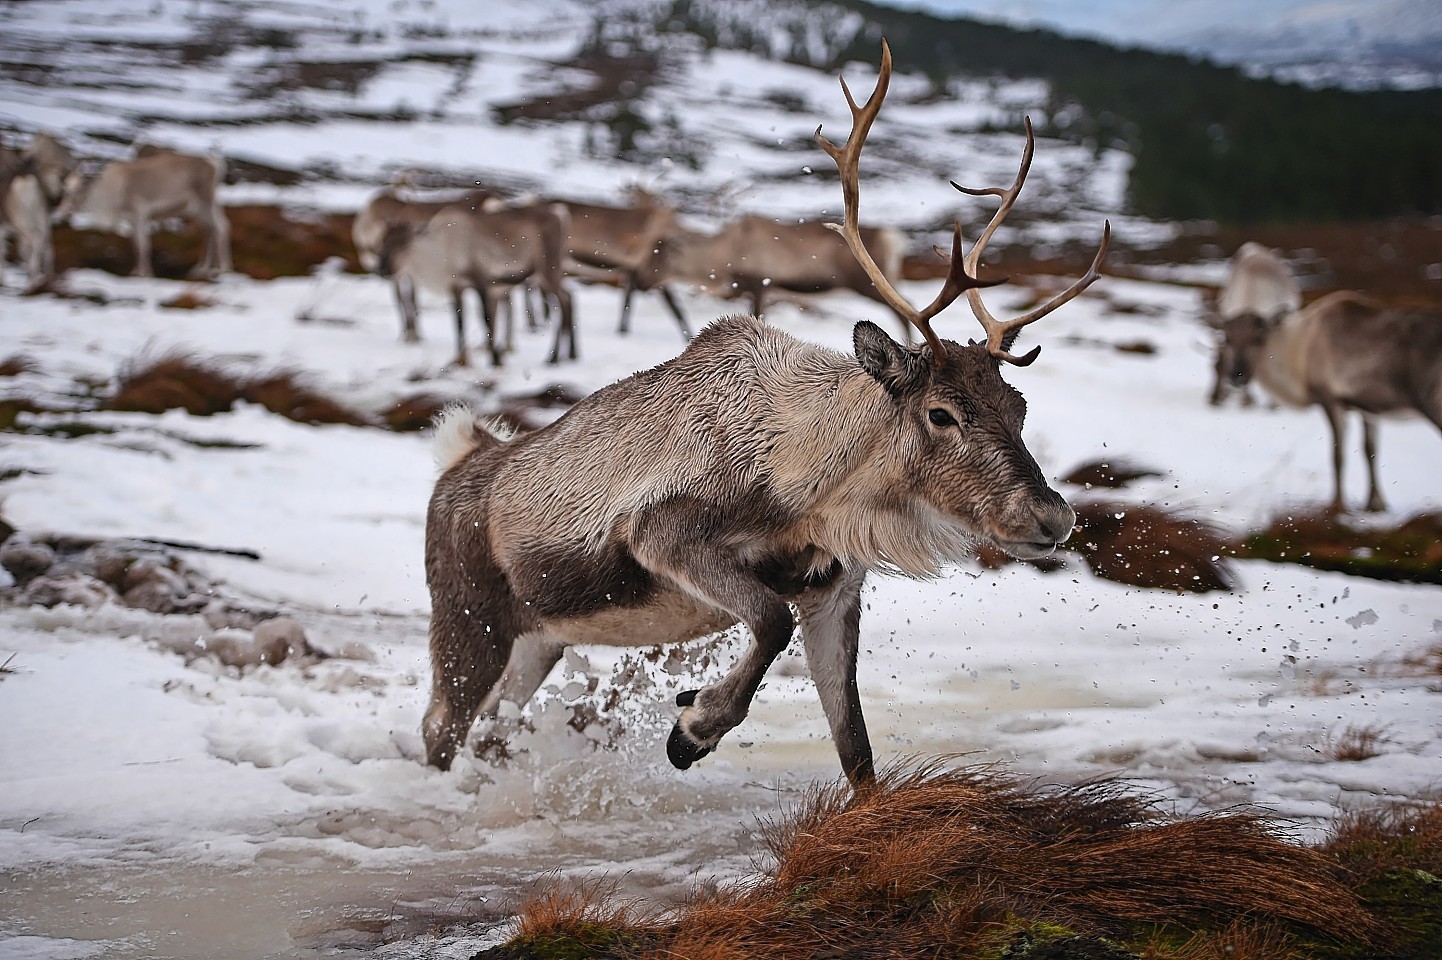 The Cairngorms reindeer